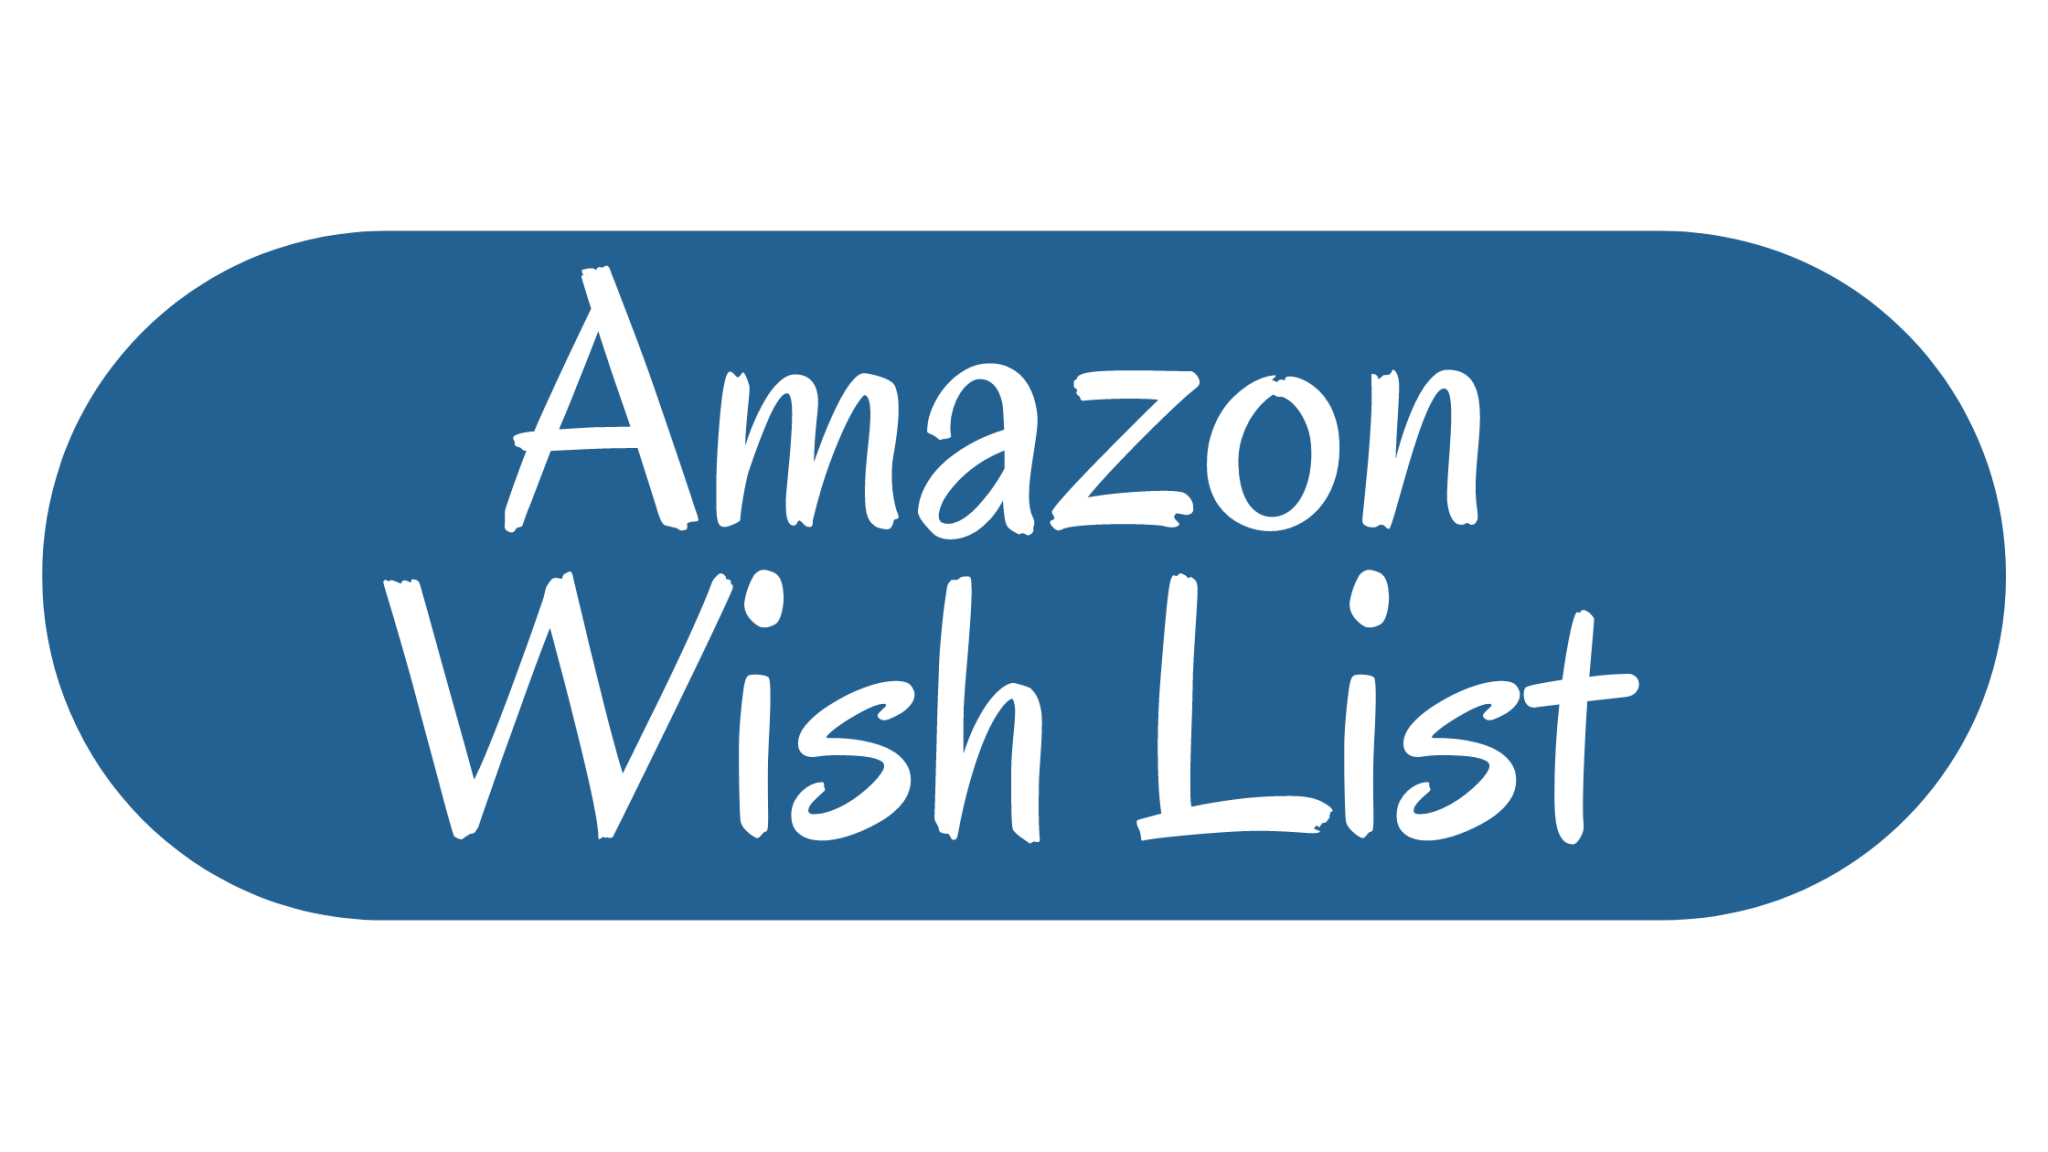 Amazon wish list button